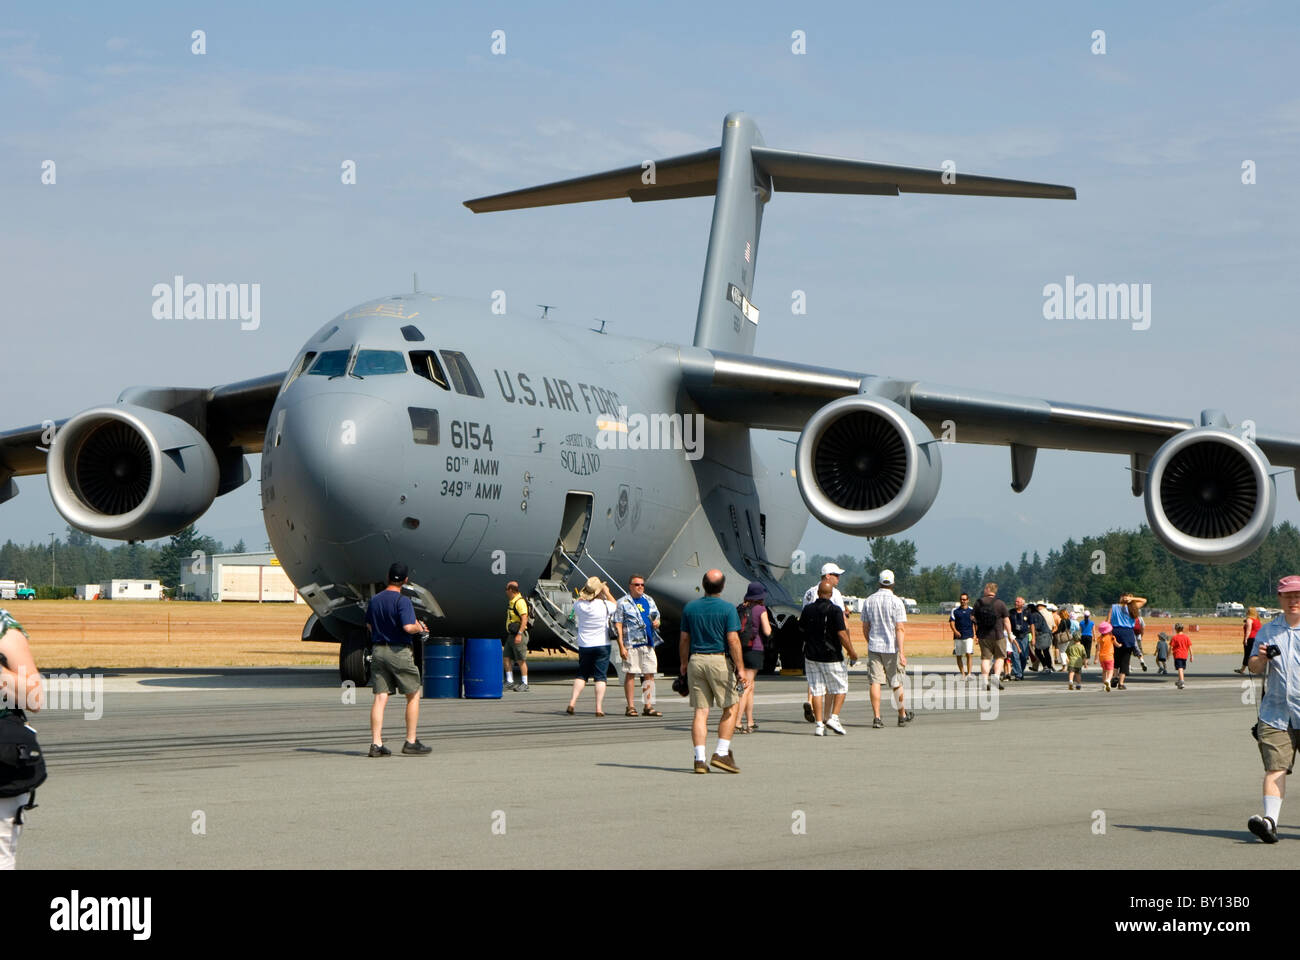 Flugzeug der US Air Force auf Boden bei Air show Stockfoto